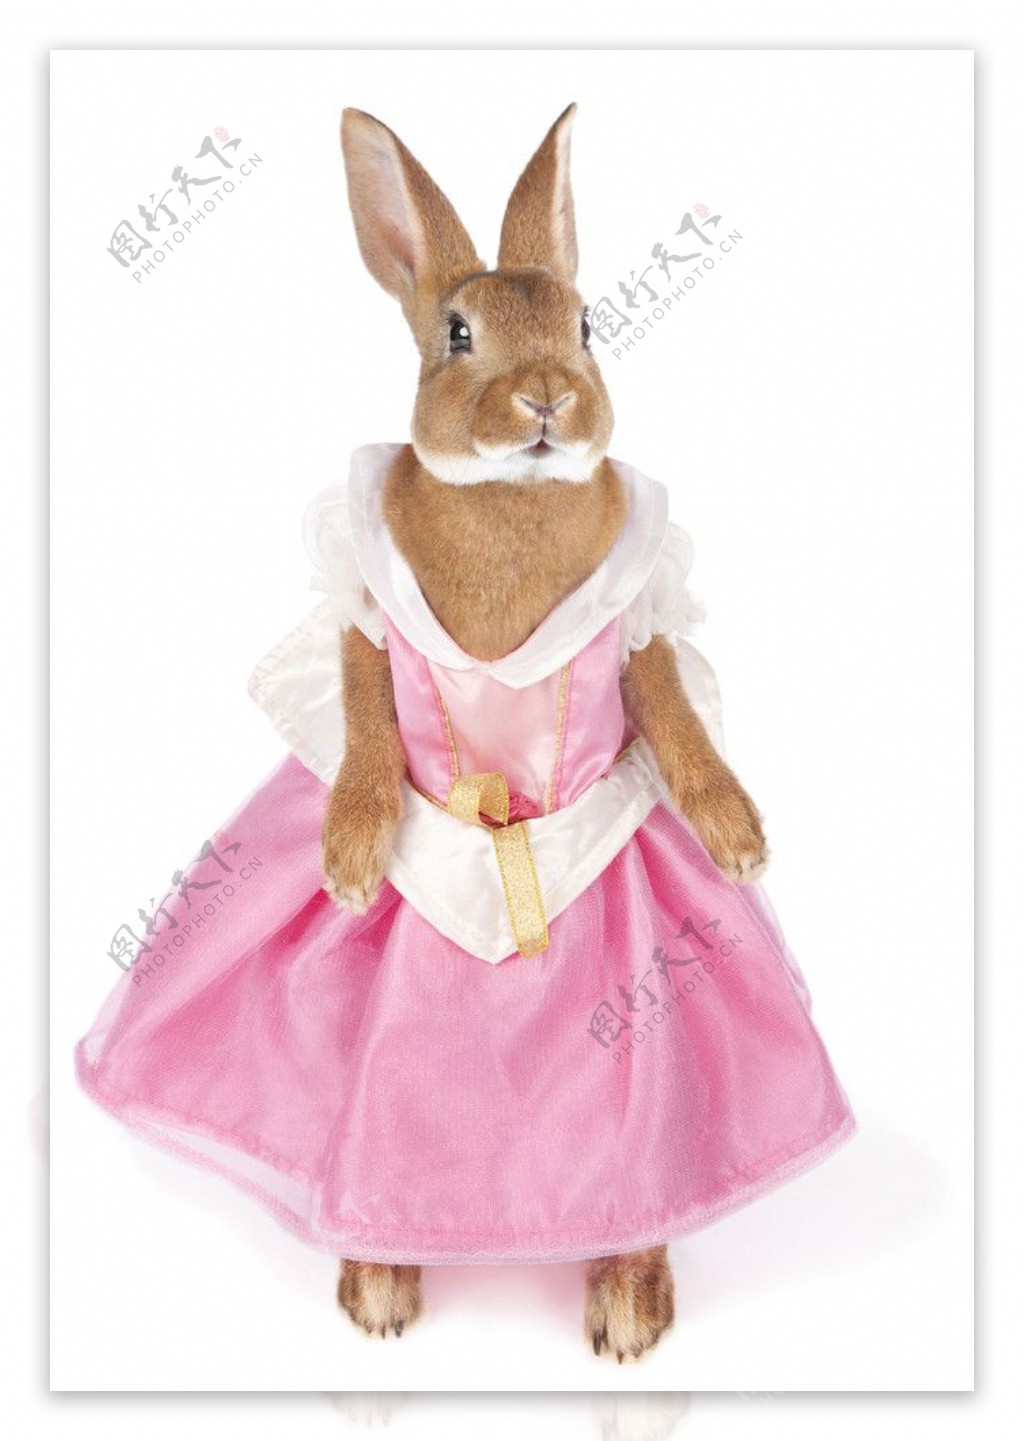 漂亮兔子穿時尚新衣服图片